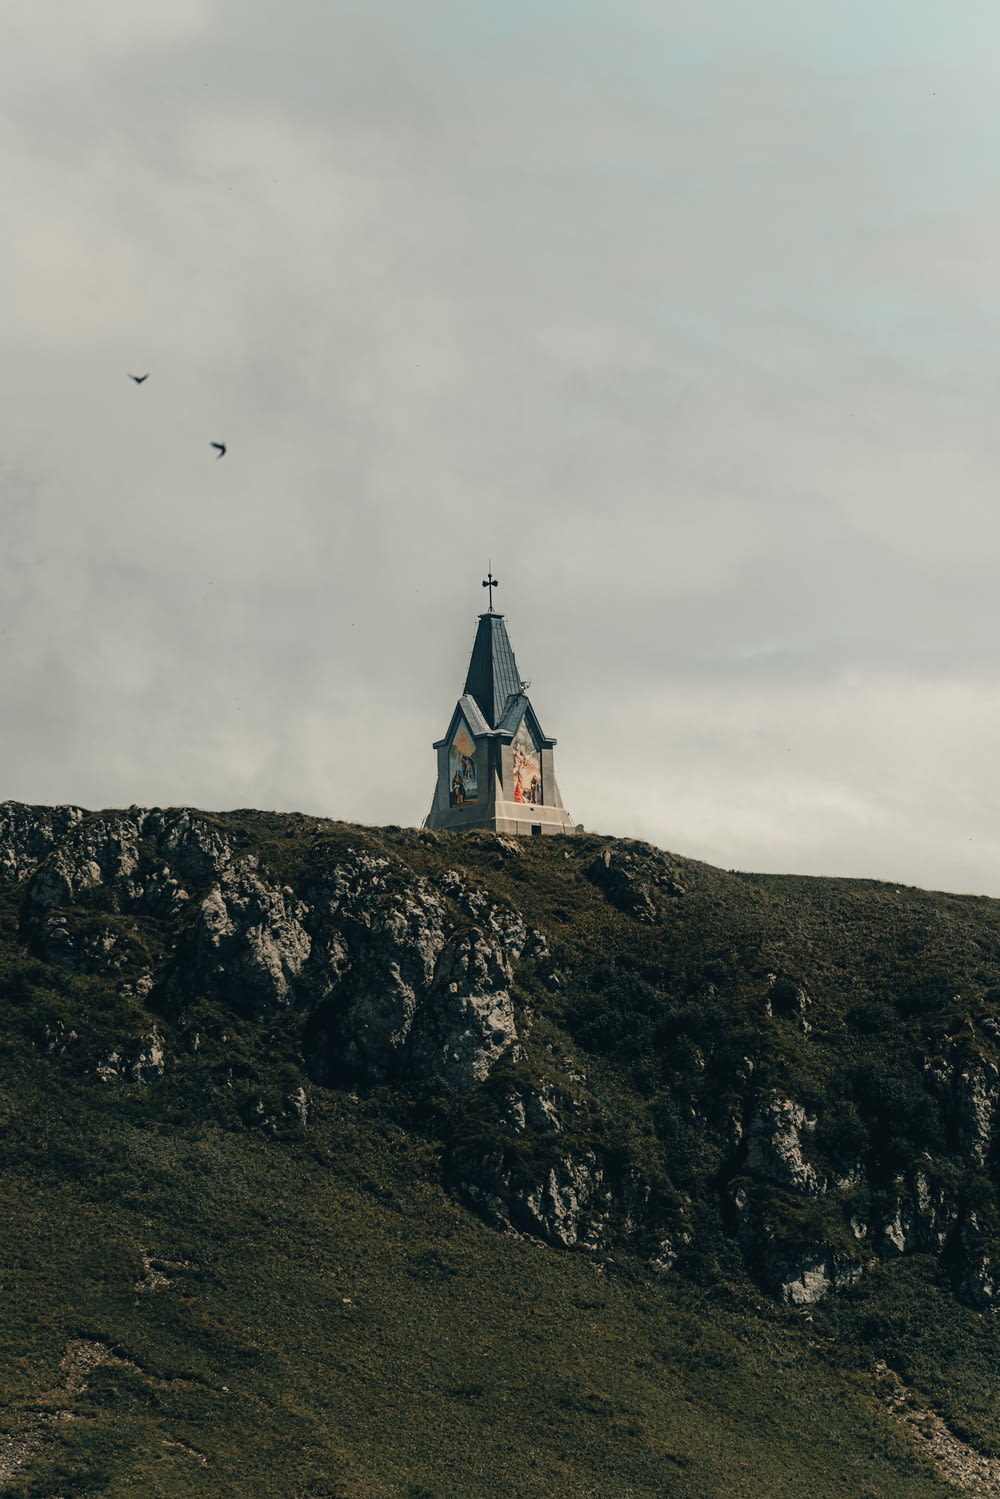 새가 날아가는 언덕 위의 교회